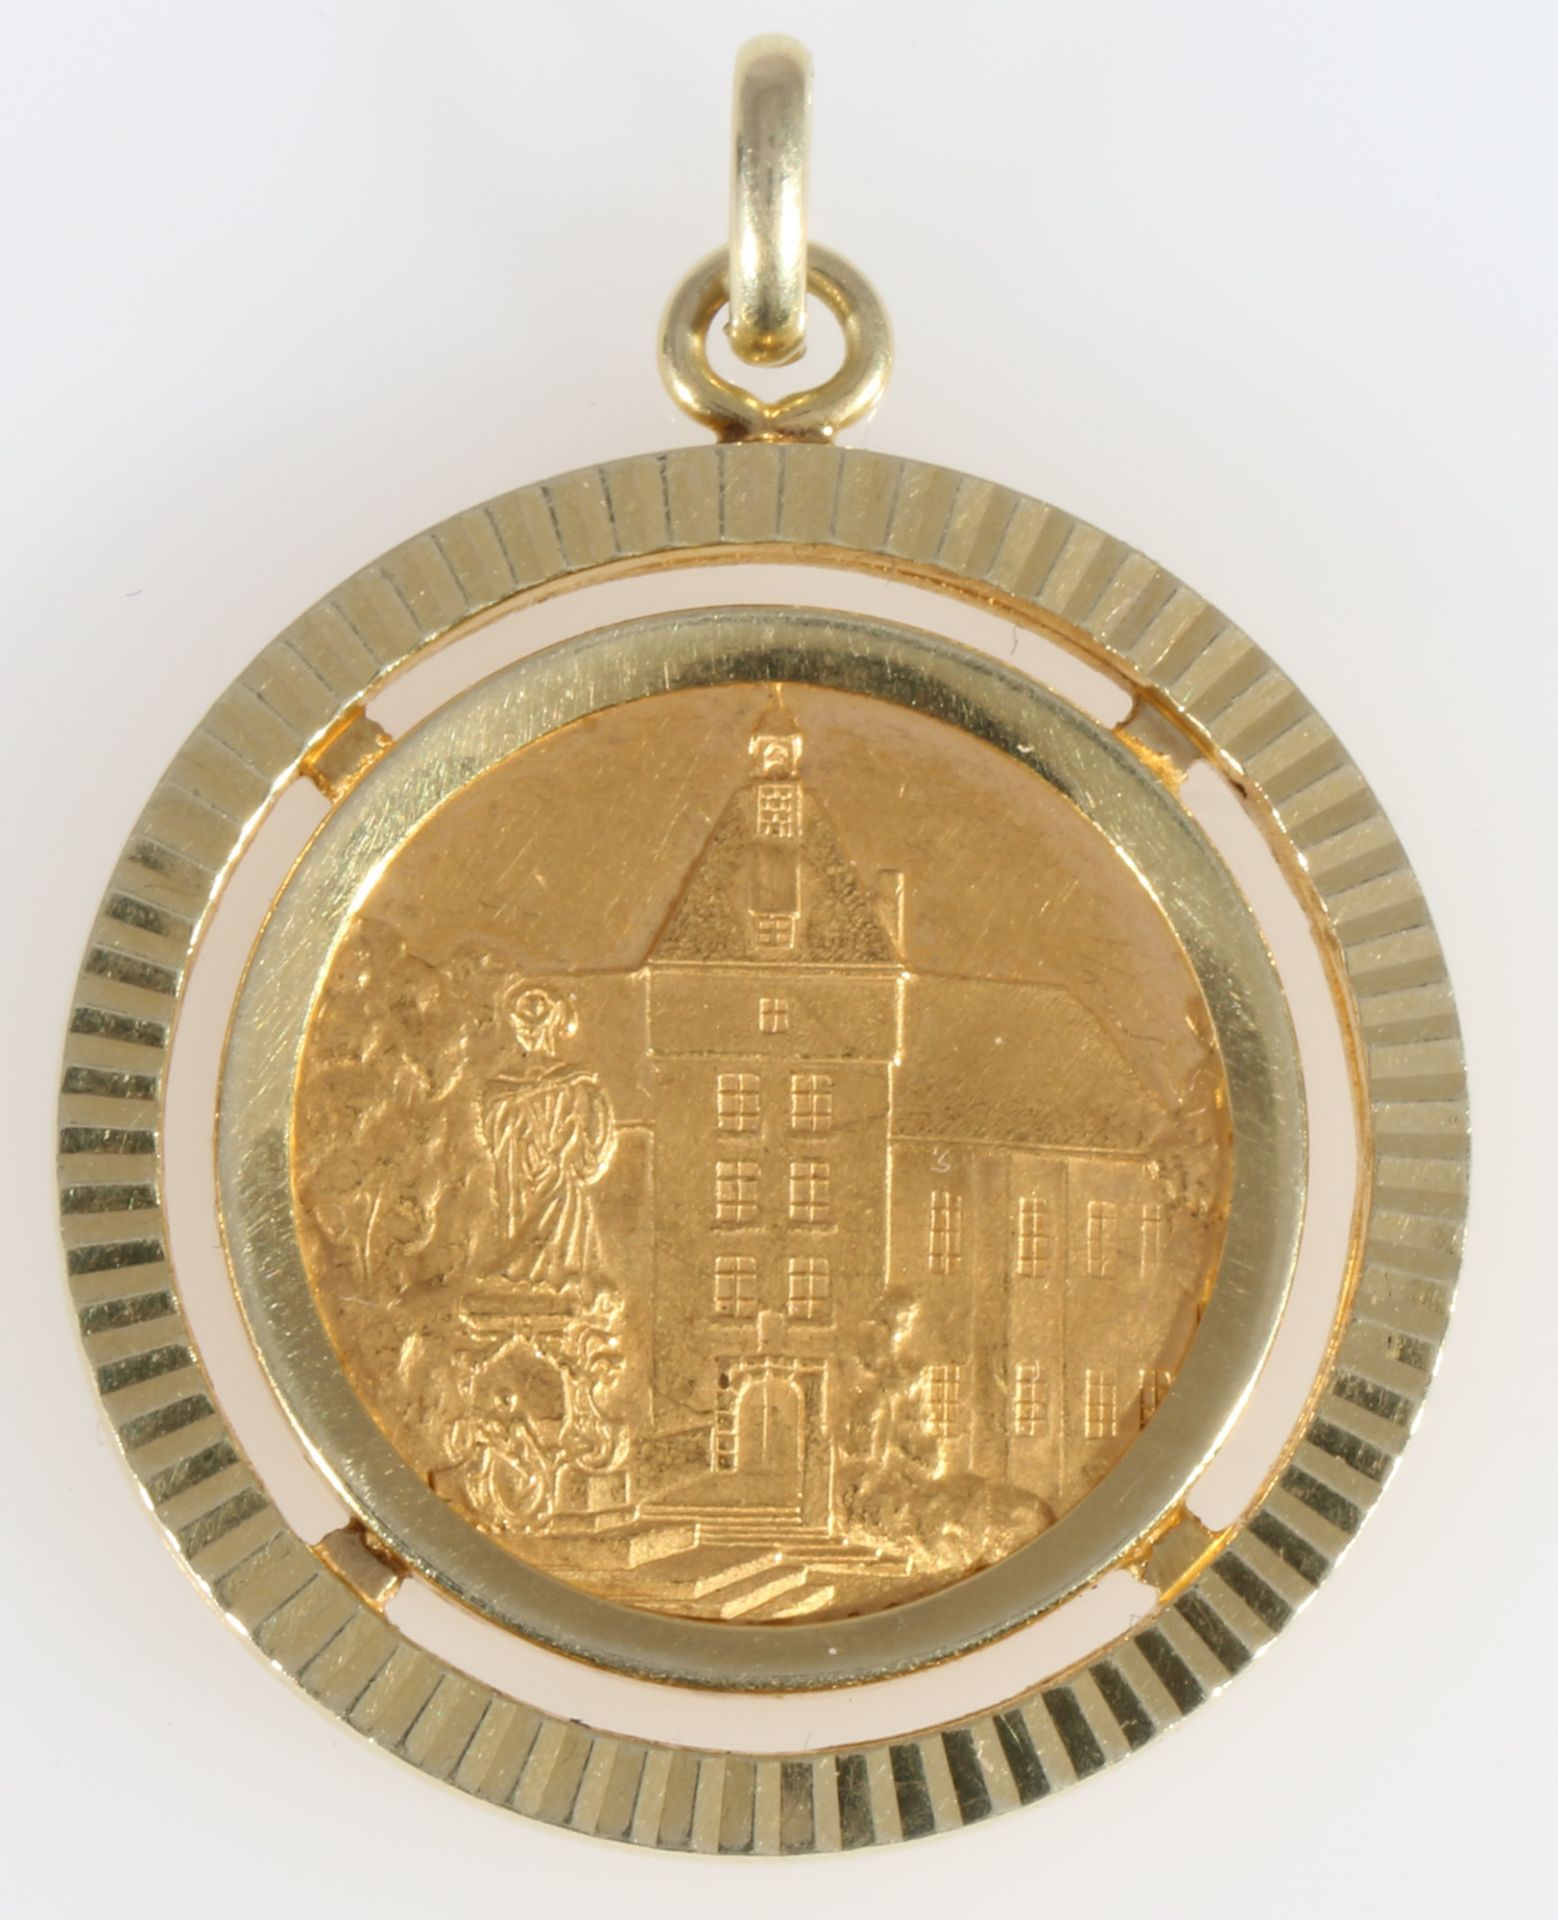 Goldmünze / 986 Gold Medaille Die Grafenstadt am Niederrhein Moers 1965, 986 gold medal coin,